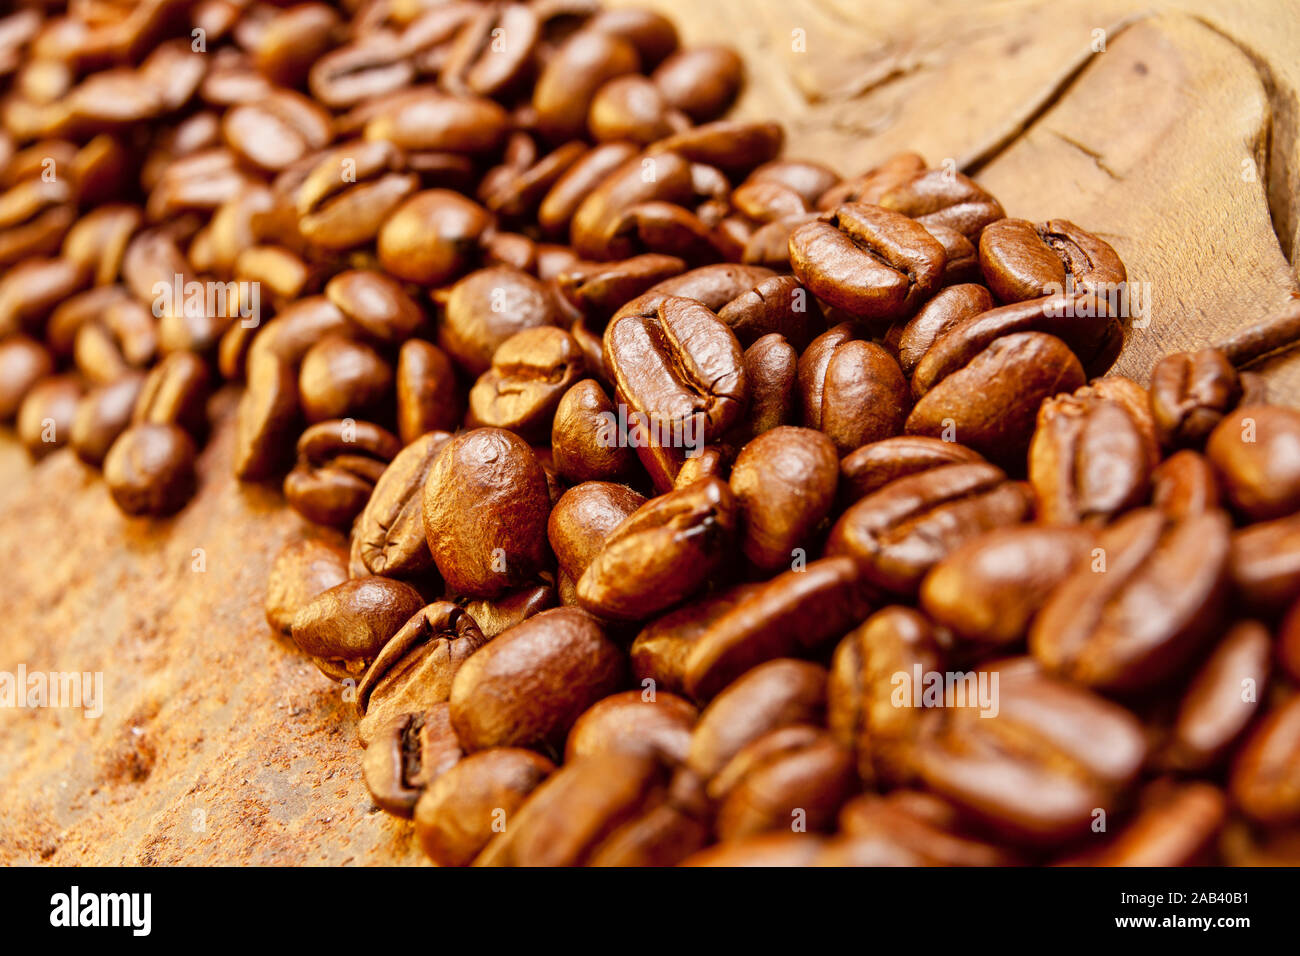 Röstfrische Kaffeebohnen in einer Holzschütte |Freshly roasted coffee beans in a wooden chute| Stock Photo